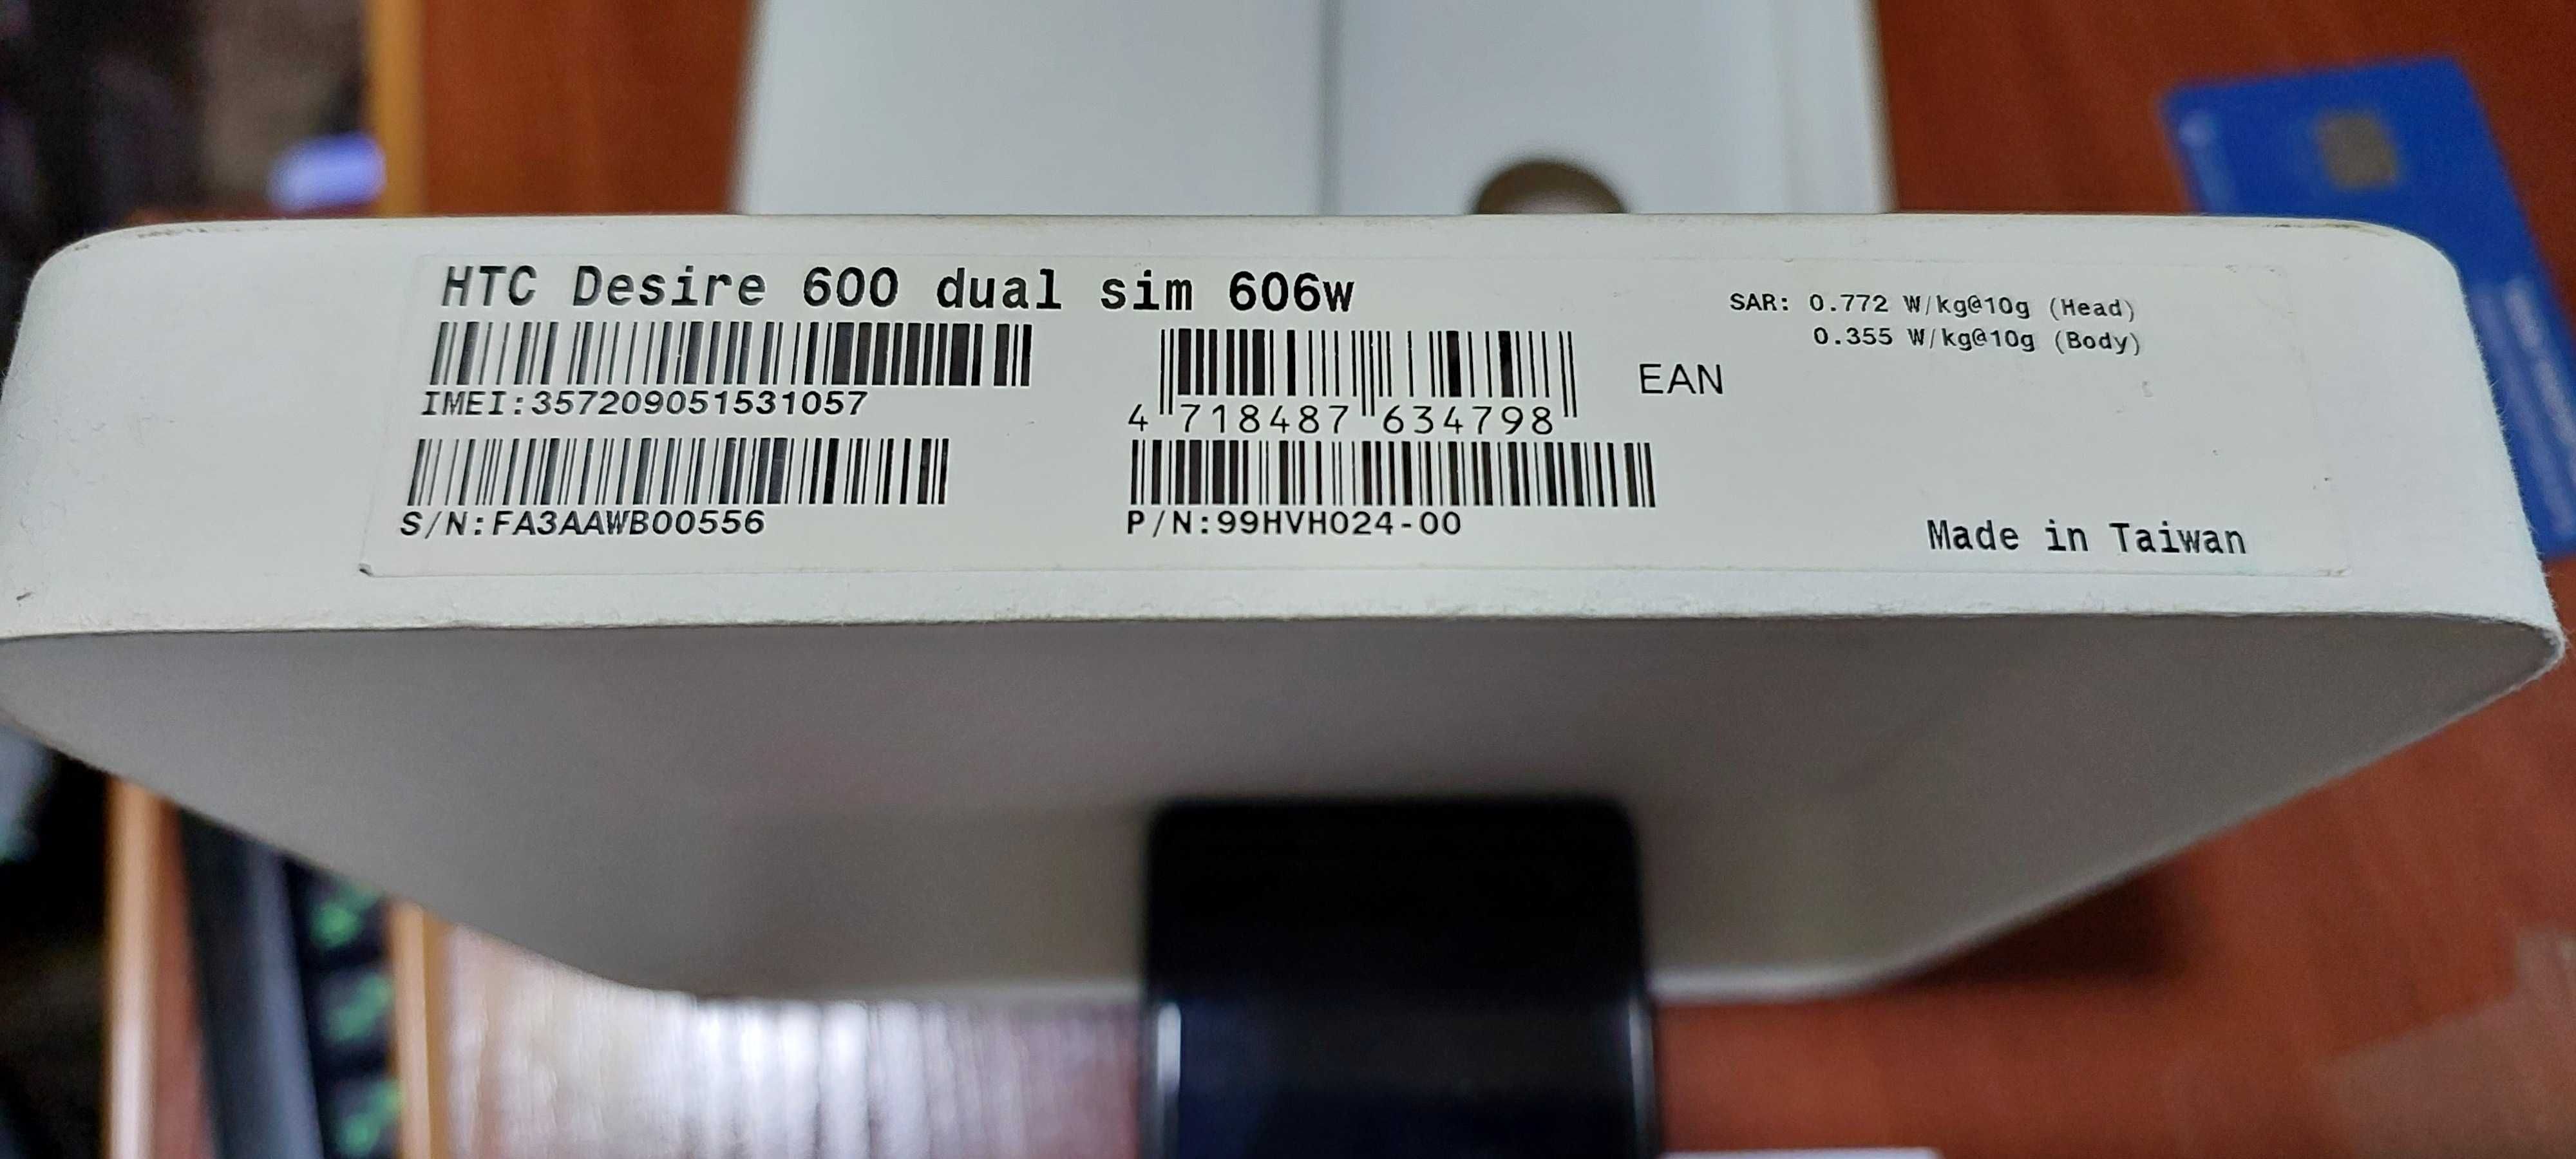 Продается телефон HTC Desire 600 dual sim